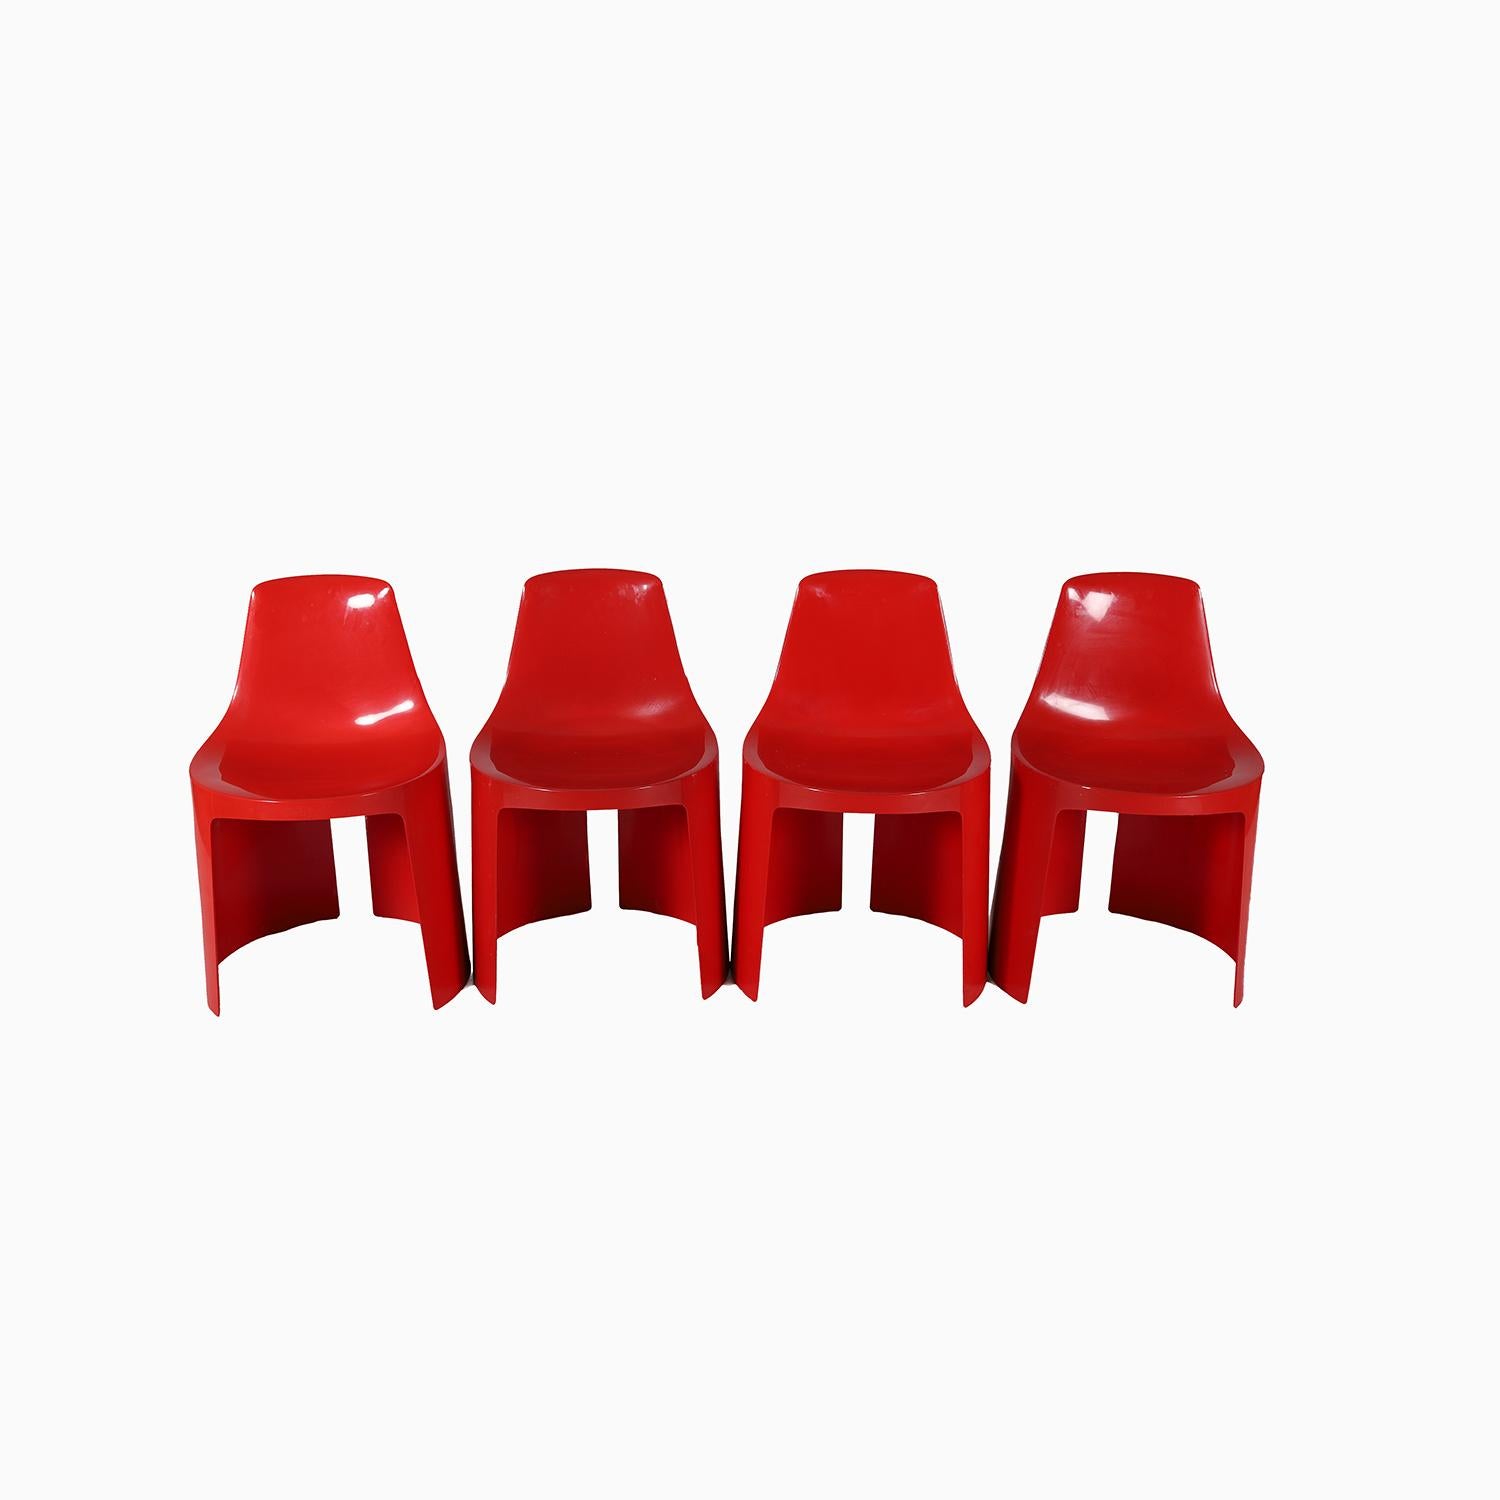 Un ensemble de 4 chaises en plastique moulé brillant de couleur rouge vif.  Conçue et produite au milieu du 20e siècle par Umbo, dessinée par Kay ReRoy Ruggles. Une addition joyeuse et peu encombrante à n'importe quel espace.  Besoin d'une touche de